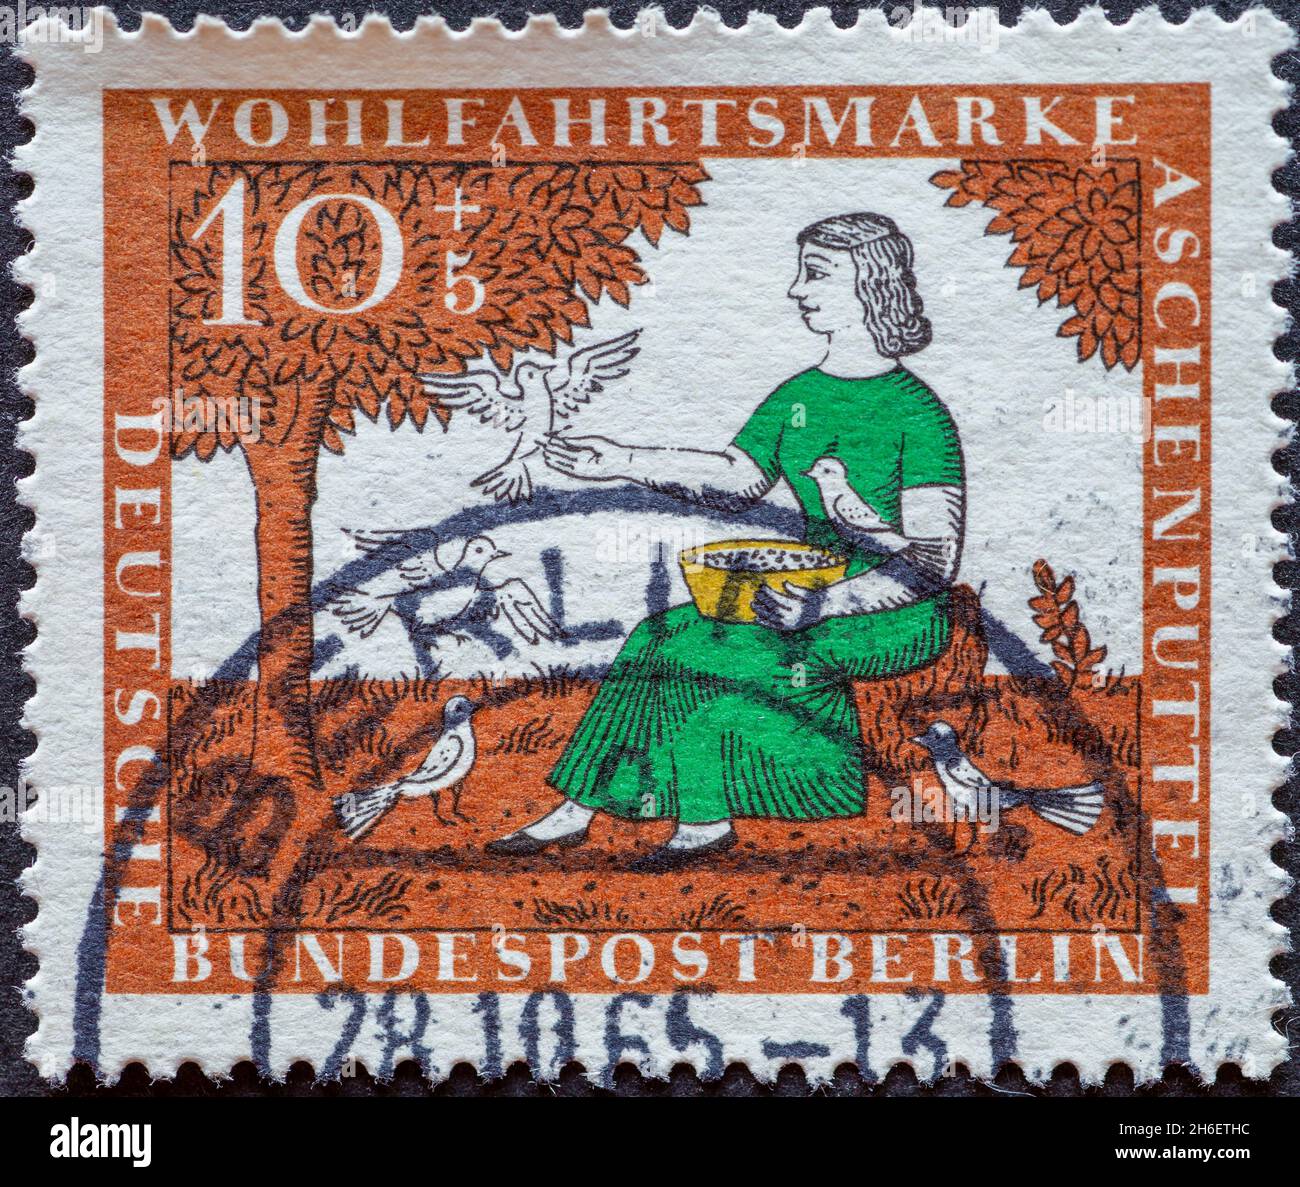 GERMANIA, Berlino - CIRCA 1965: Un francobollo dalla Germania, Berlino che mostra una foto della fiaba dei Fratelli Grimm: Cenerentola. Pigeon Fee Foto Stock